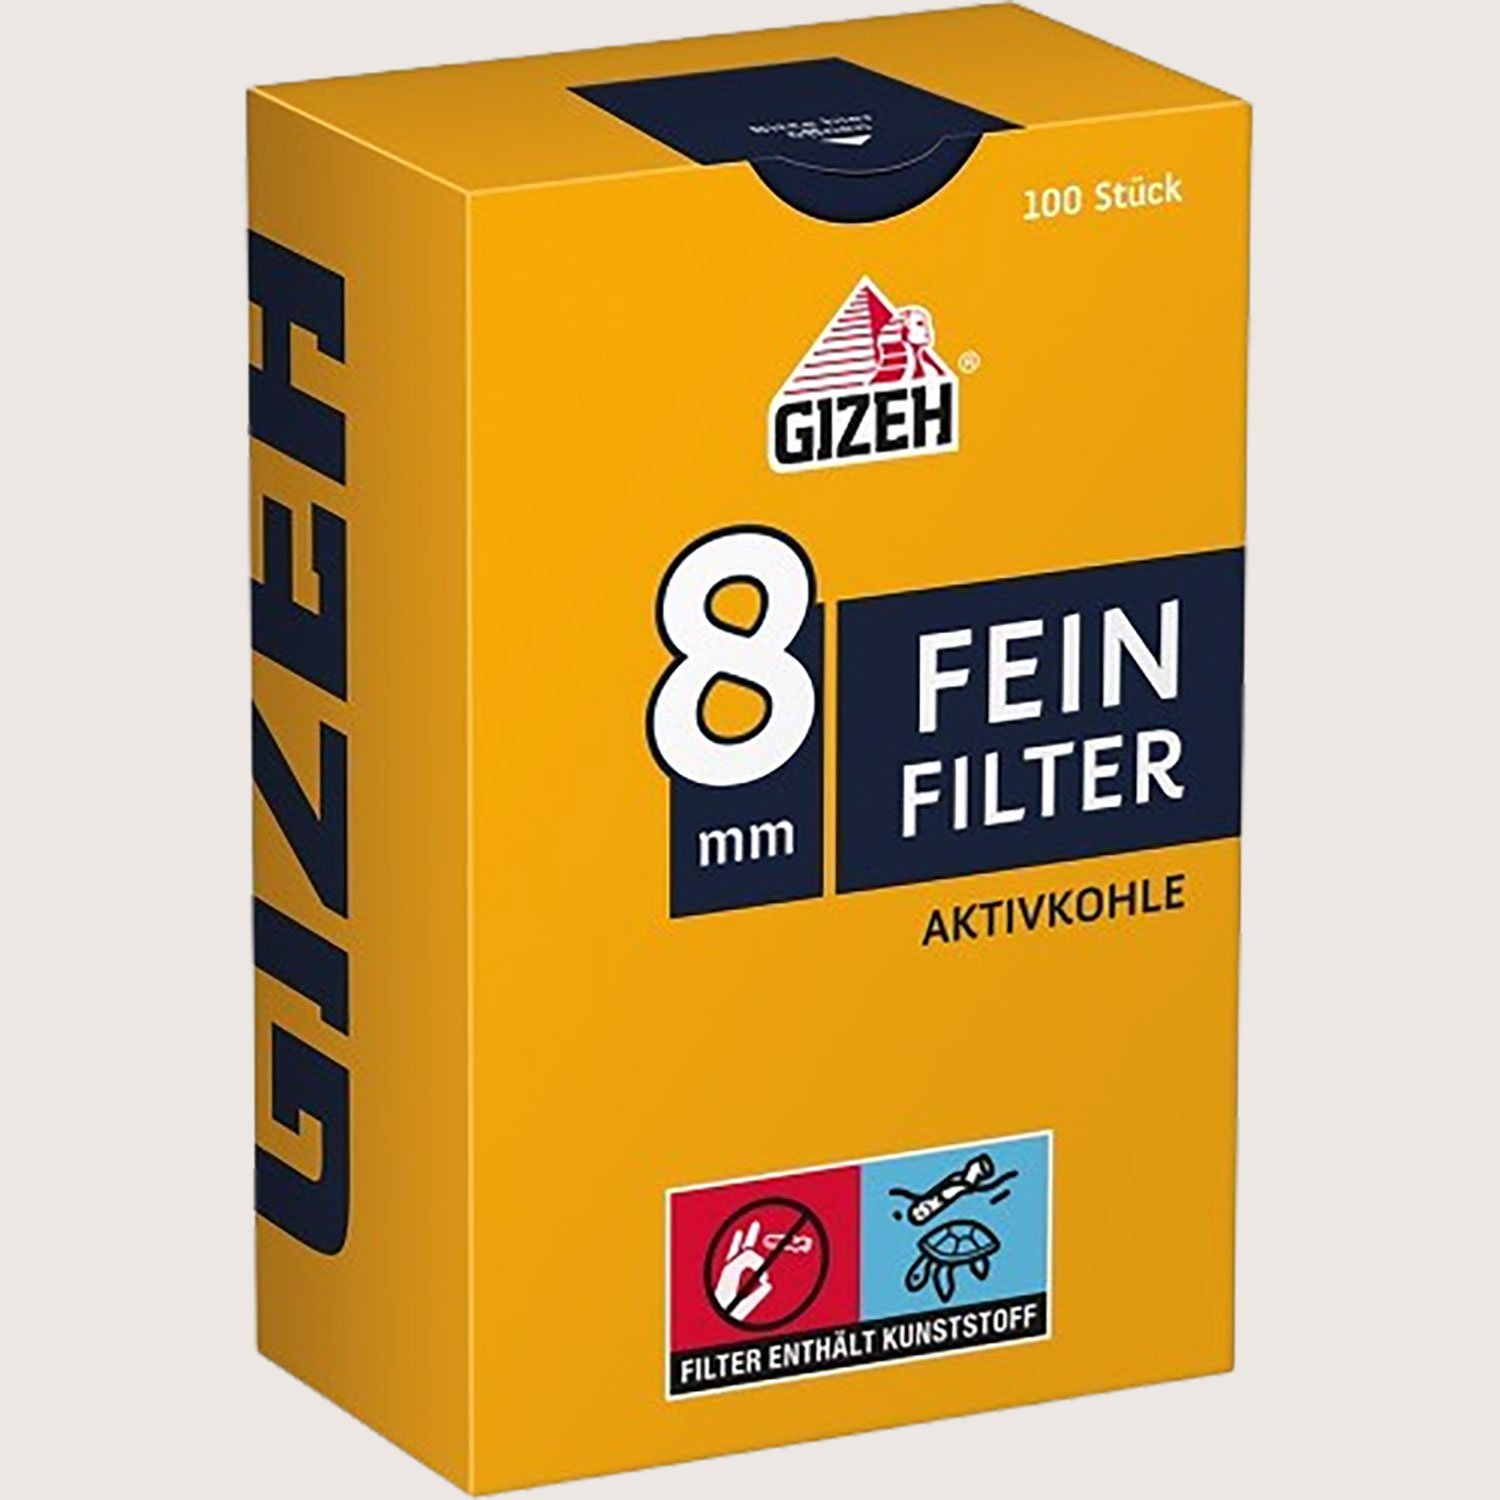 Gizeh Aktivkohlefilter 8 mm 100 Filter